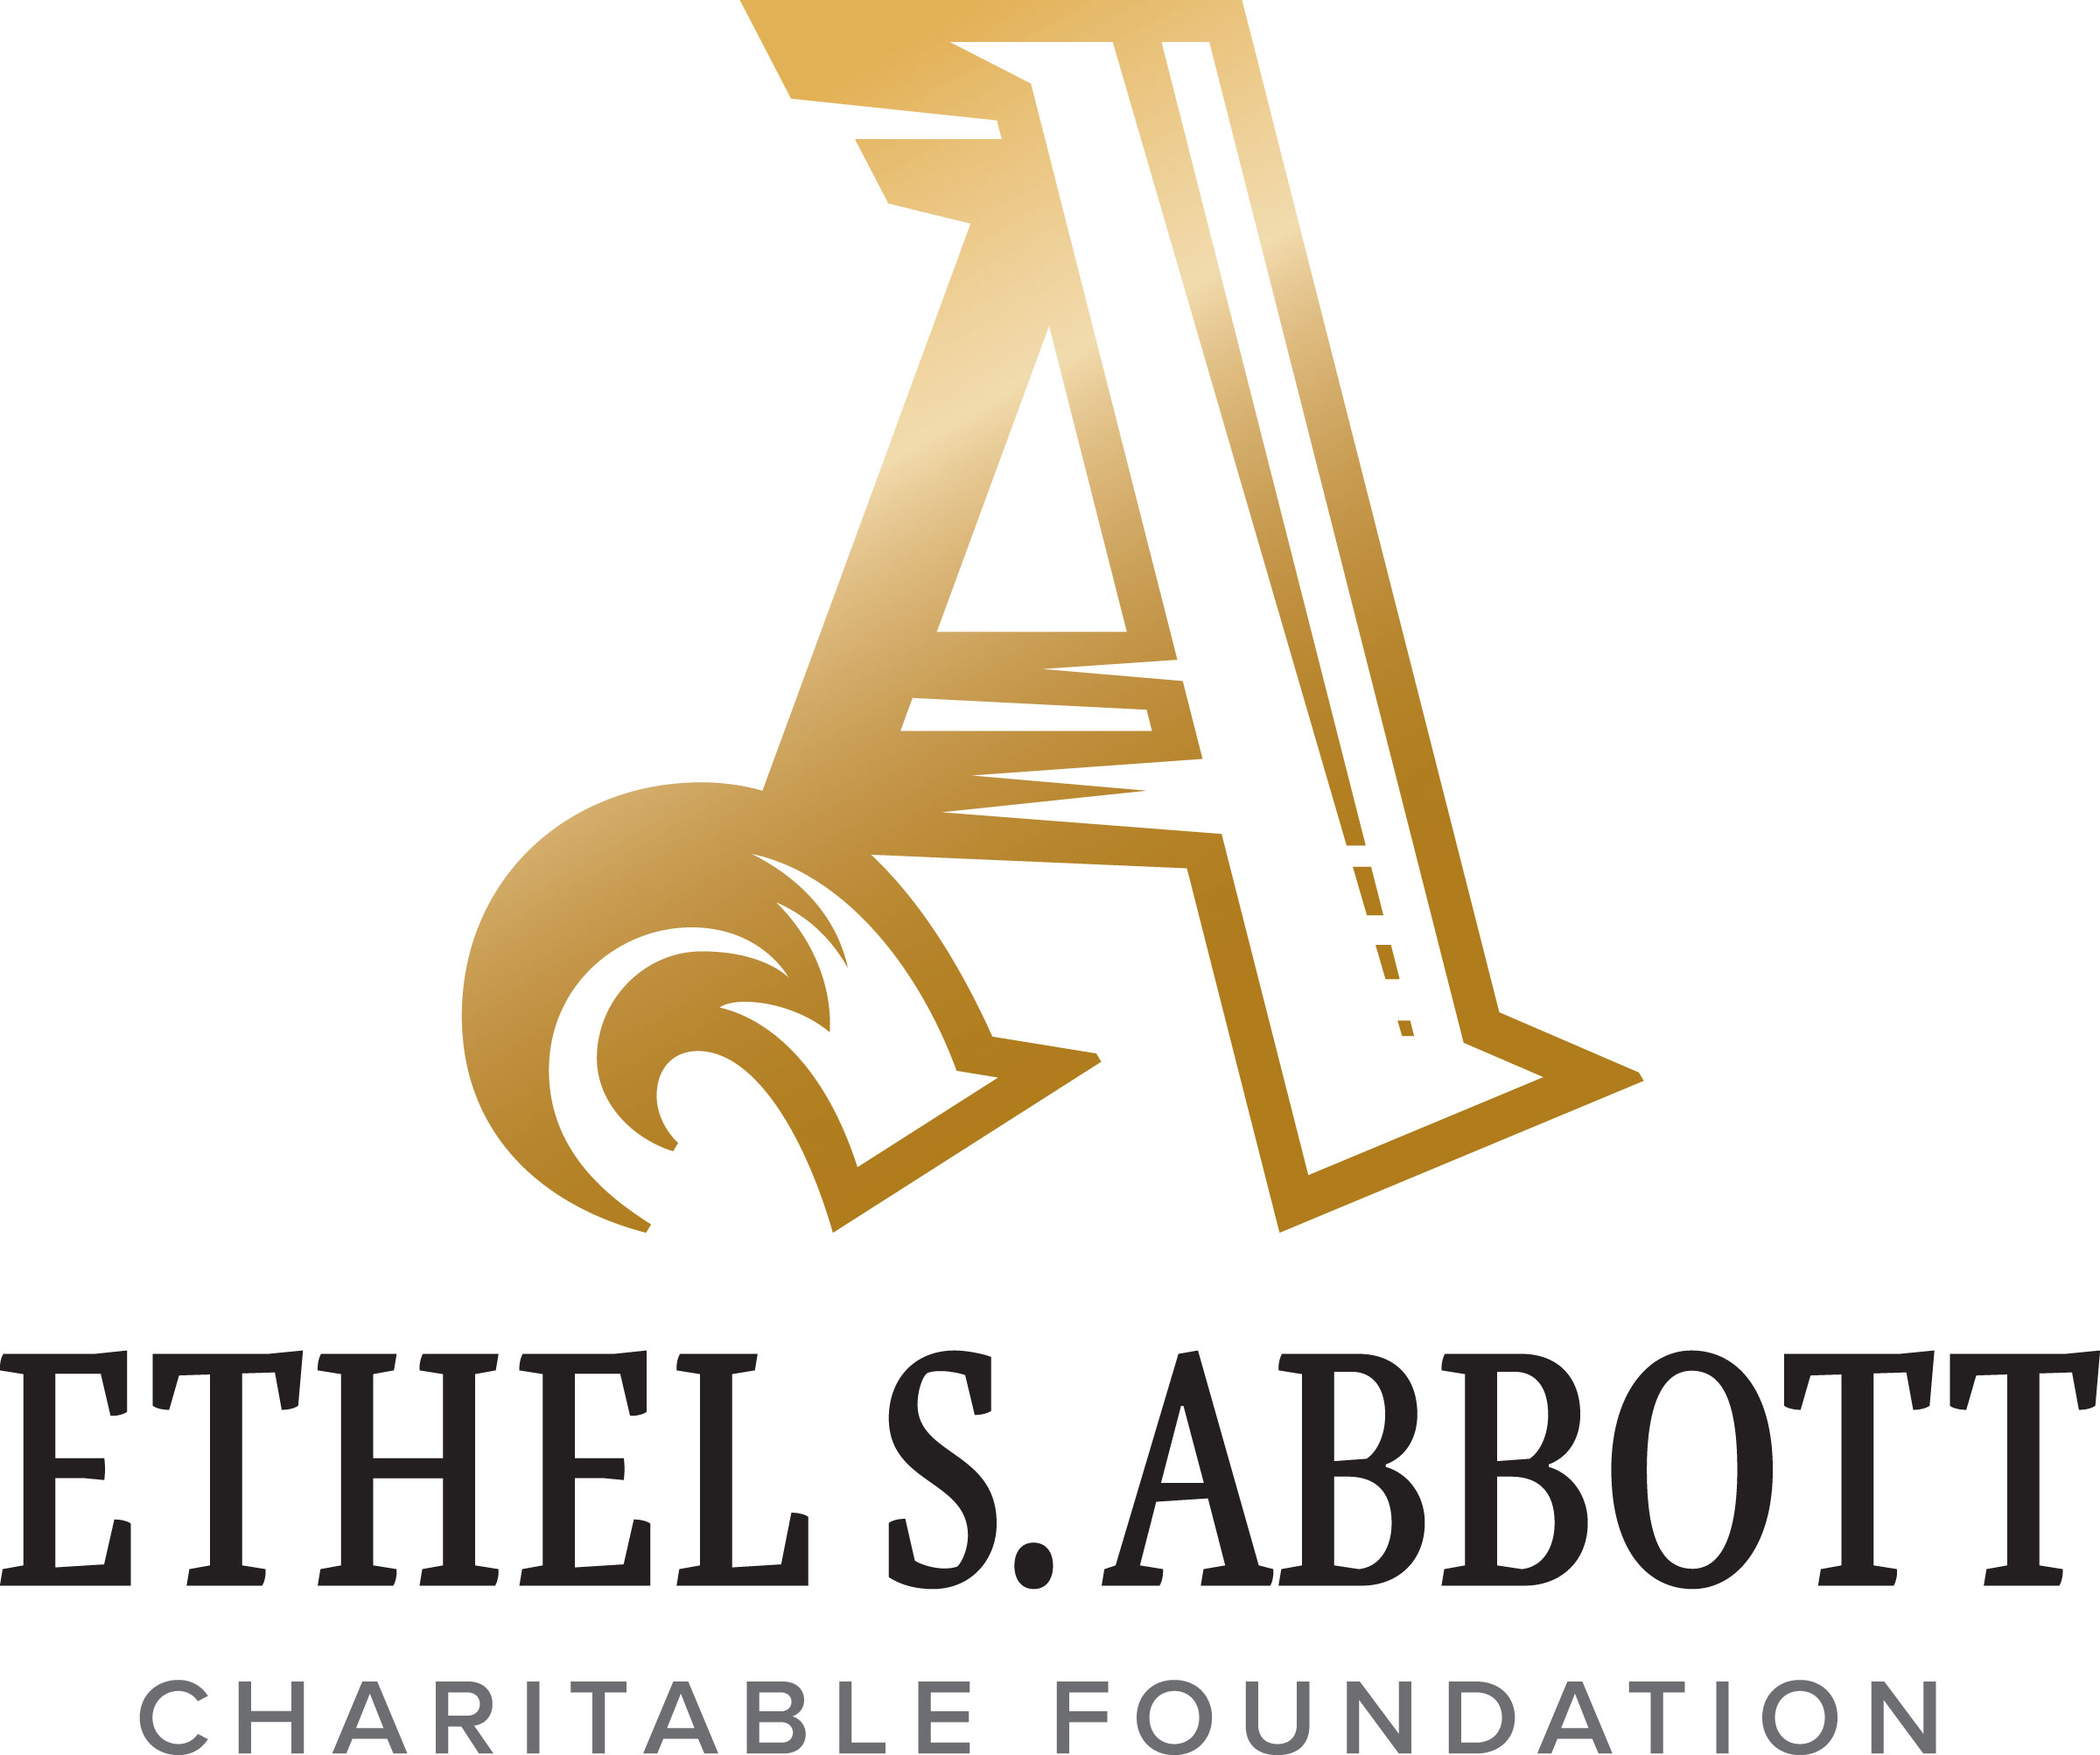 Ethel S. Abbott Charitable Foundation